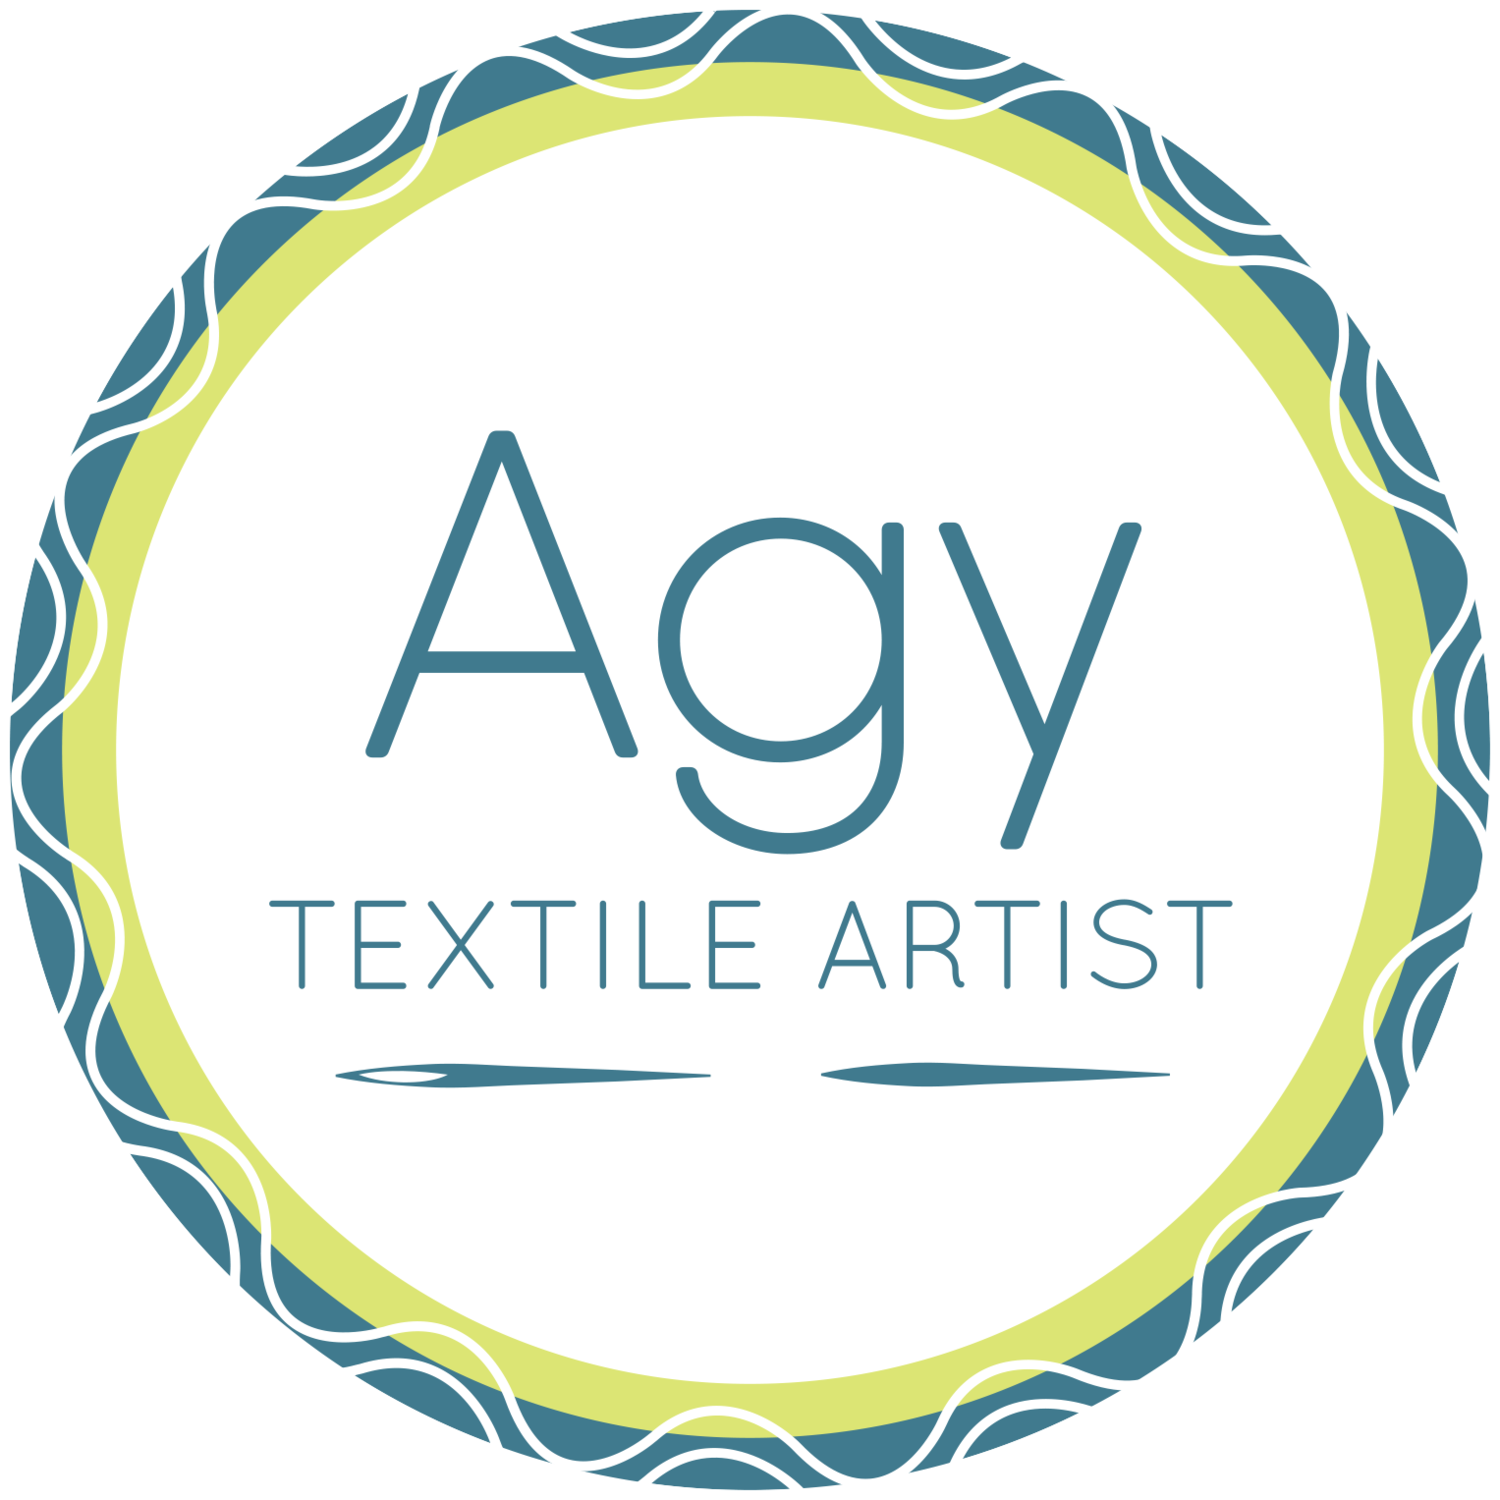 Agy Textile Artist